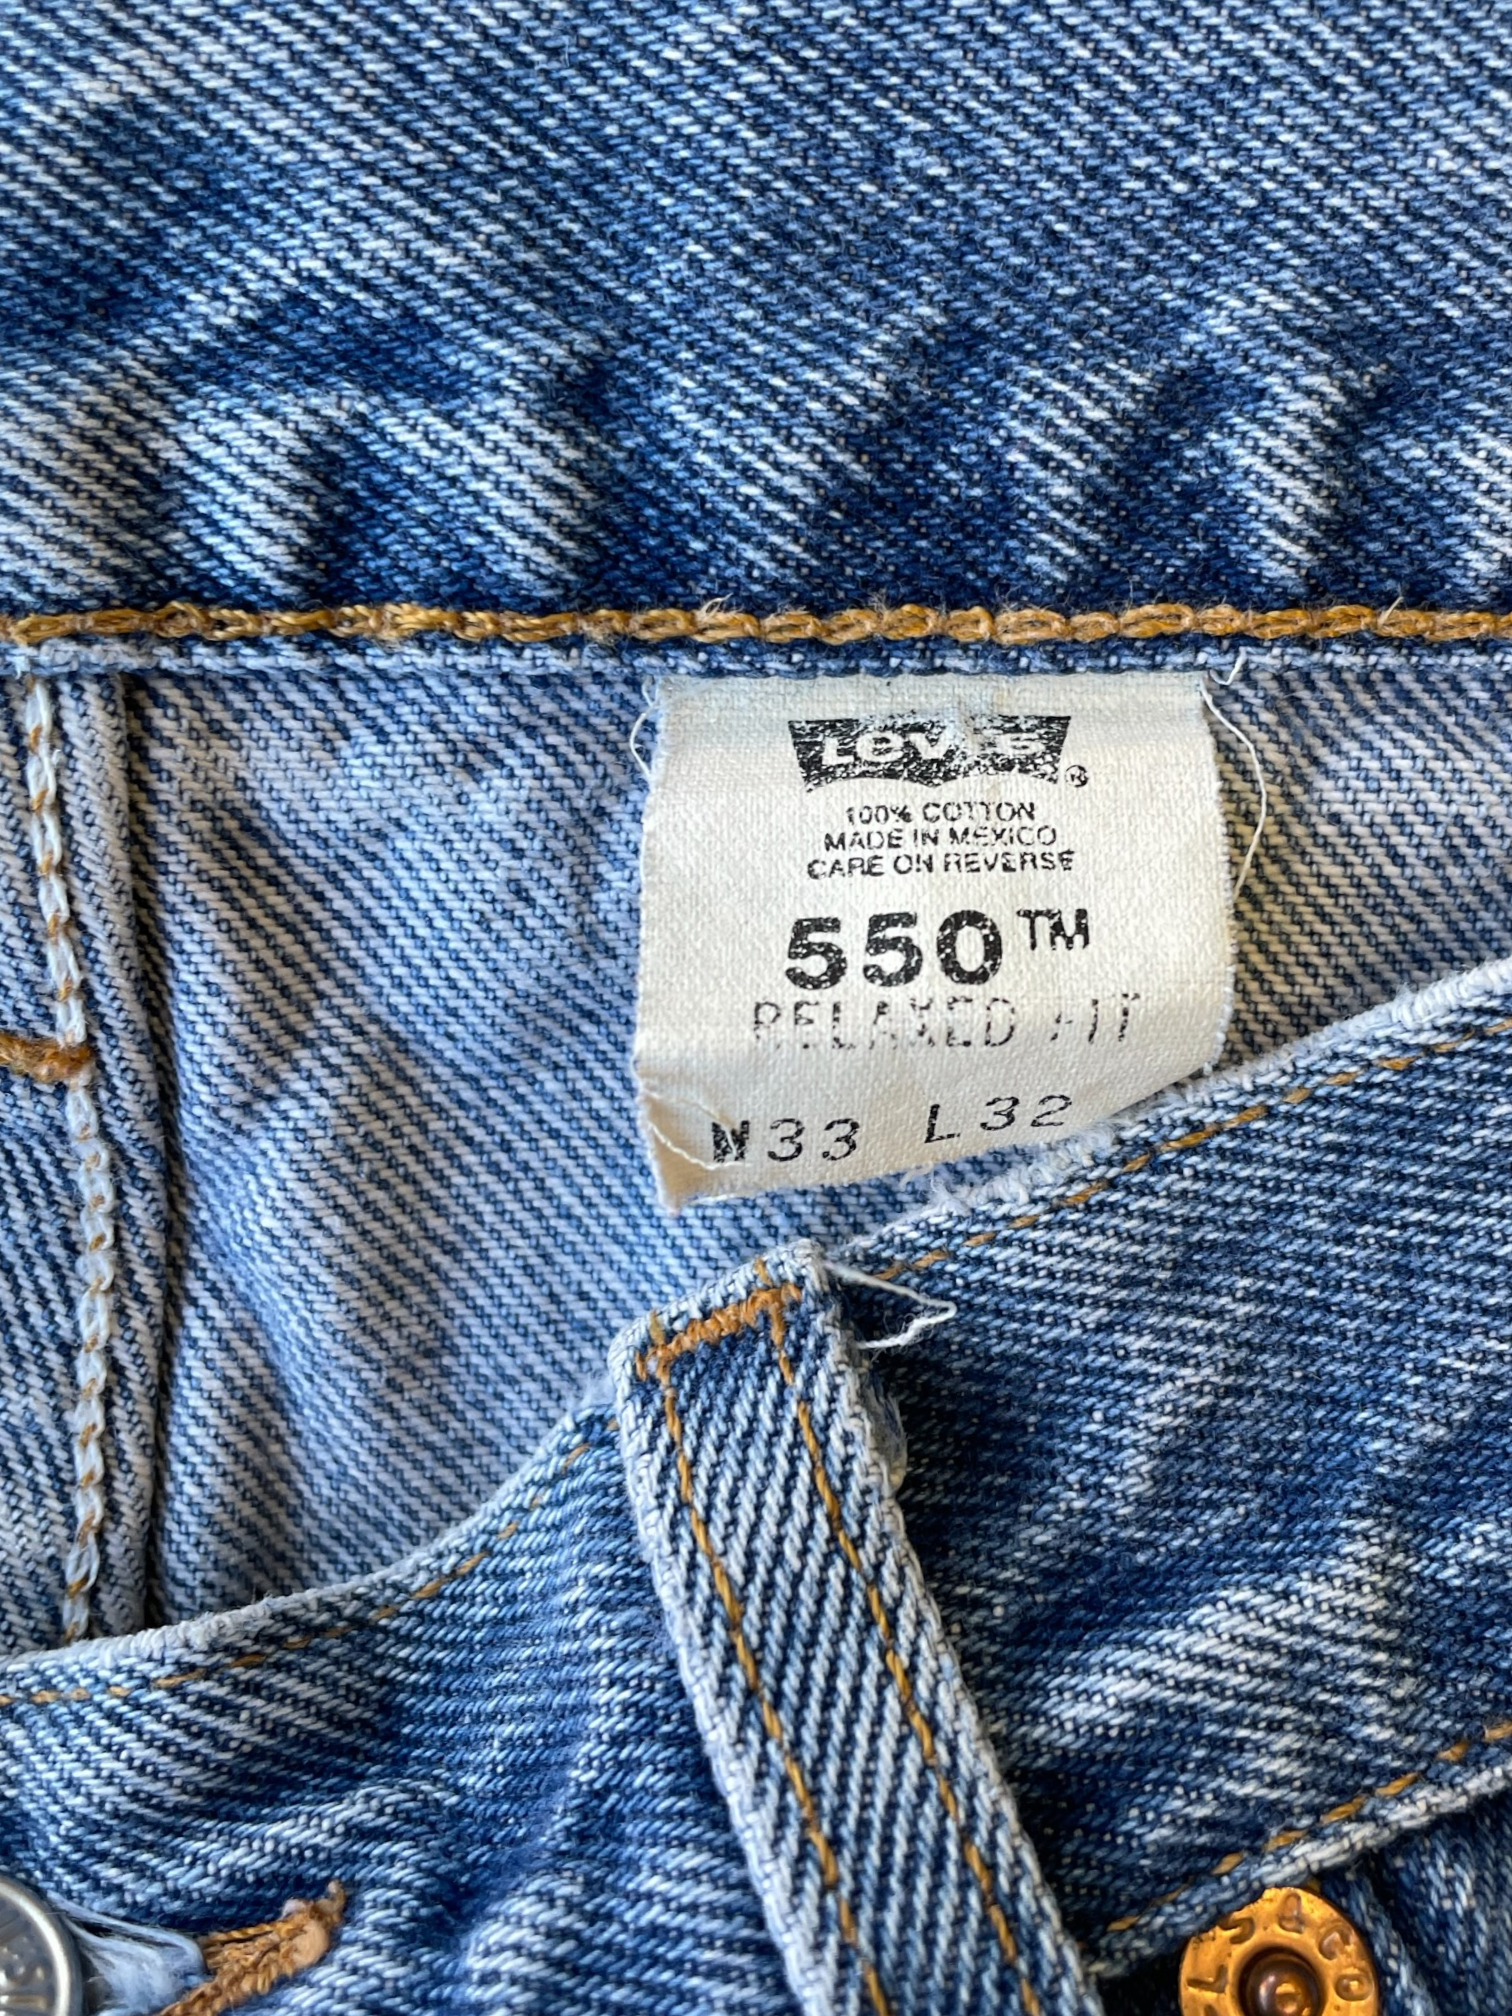 90s Levi 550 Light Wash Jeans - 32x30